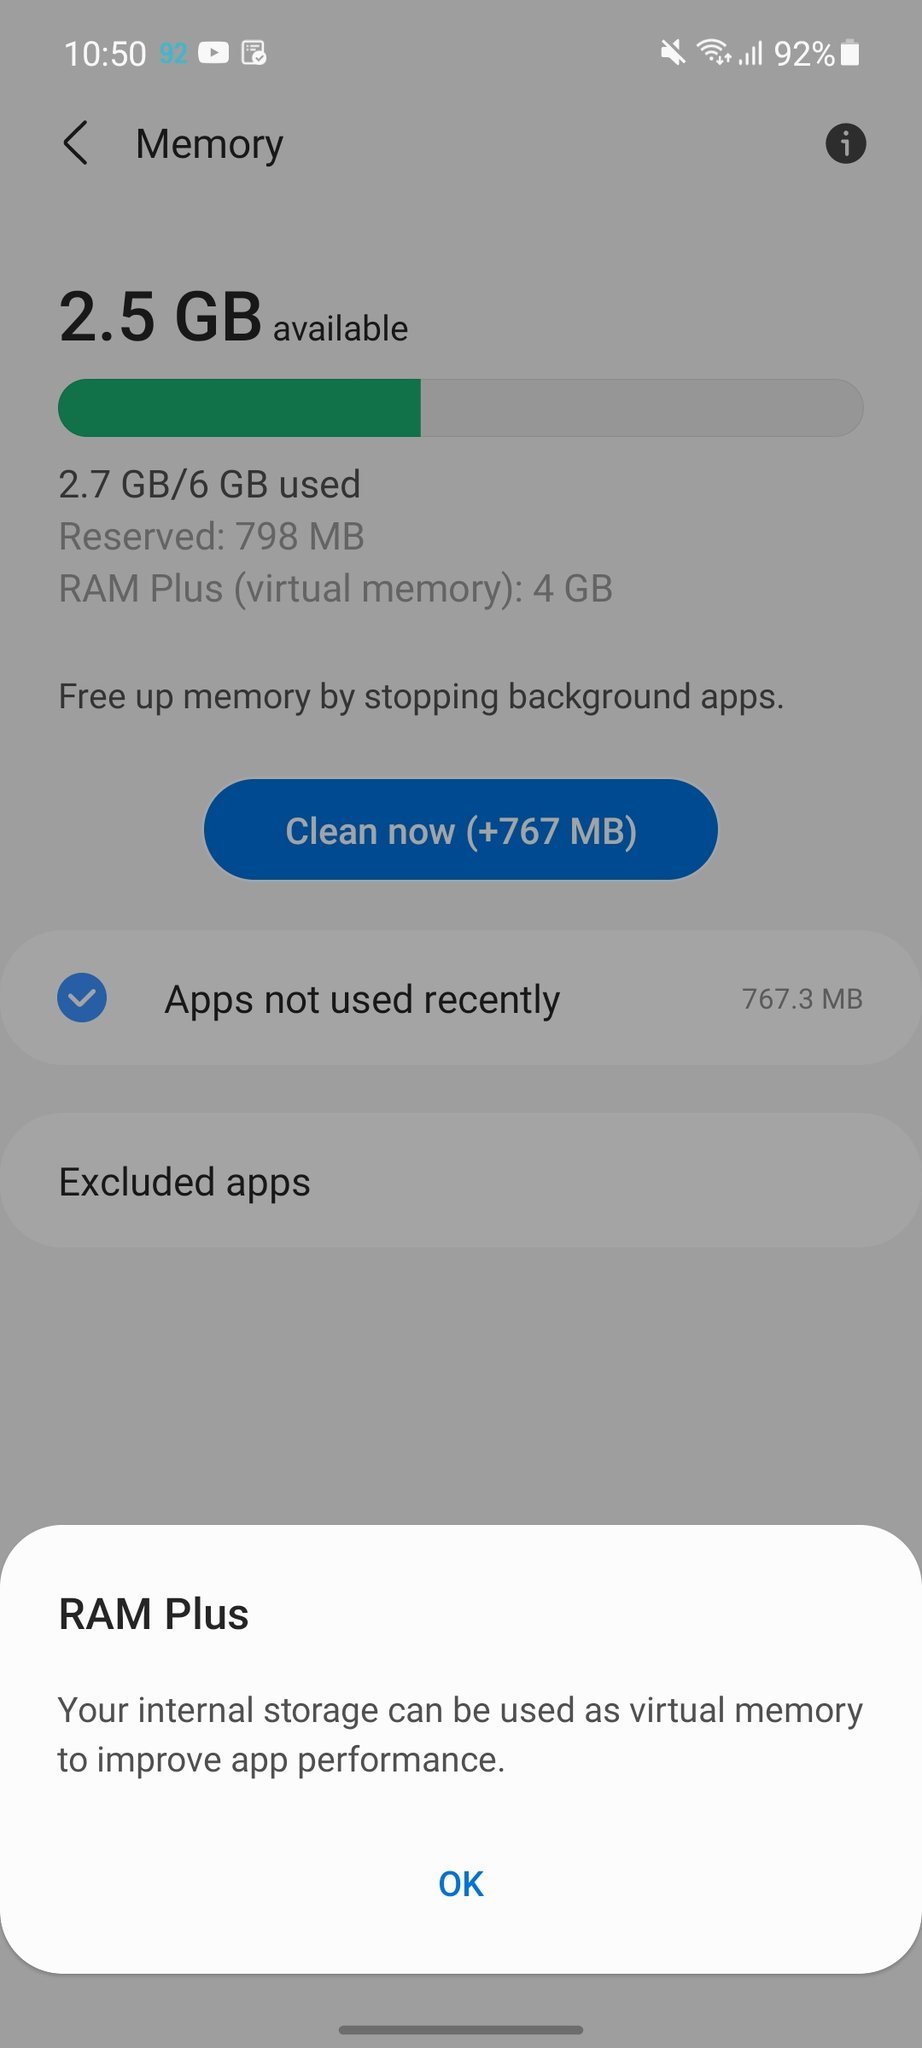 Por enquanto, o RAM Plus está disponível apenas para usuários indianos.